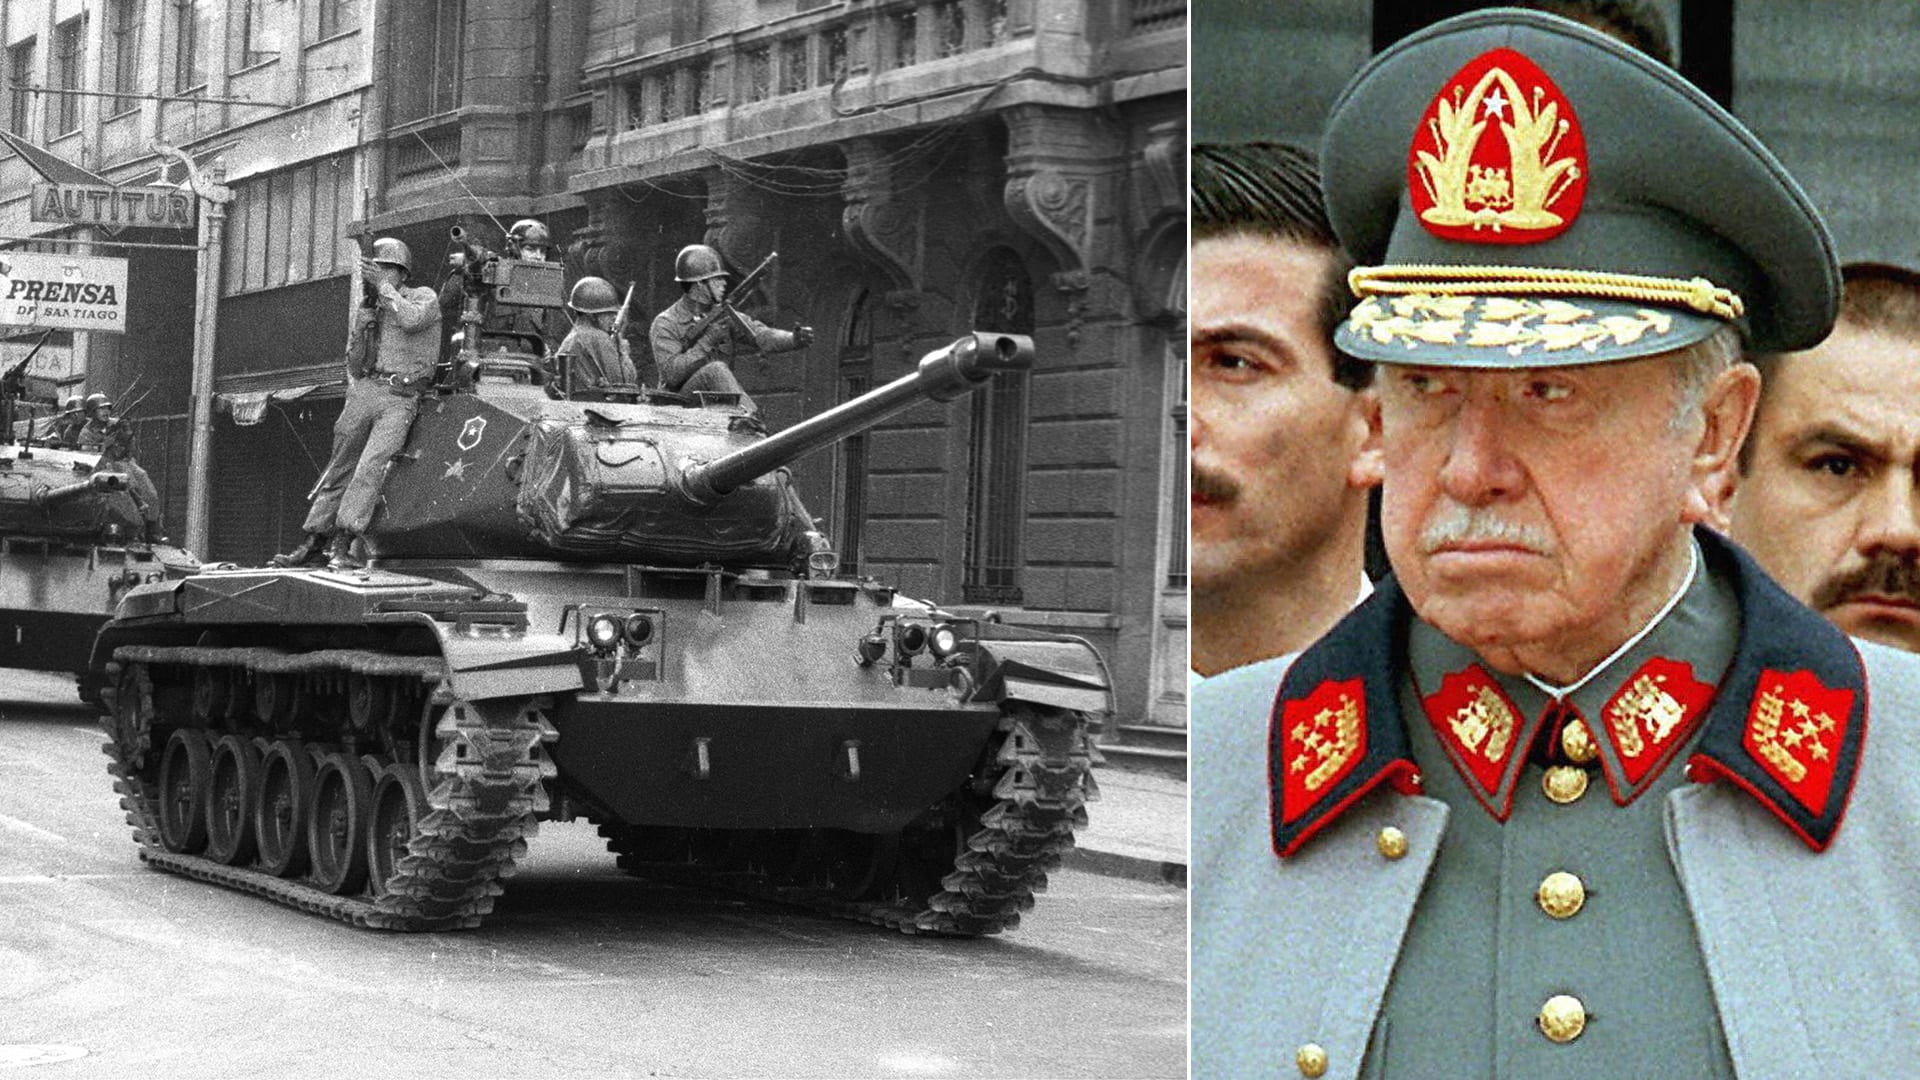 Augusto Pinochet provedl v roce 1973 brutální vojenský puč